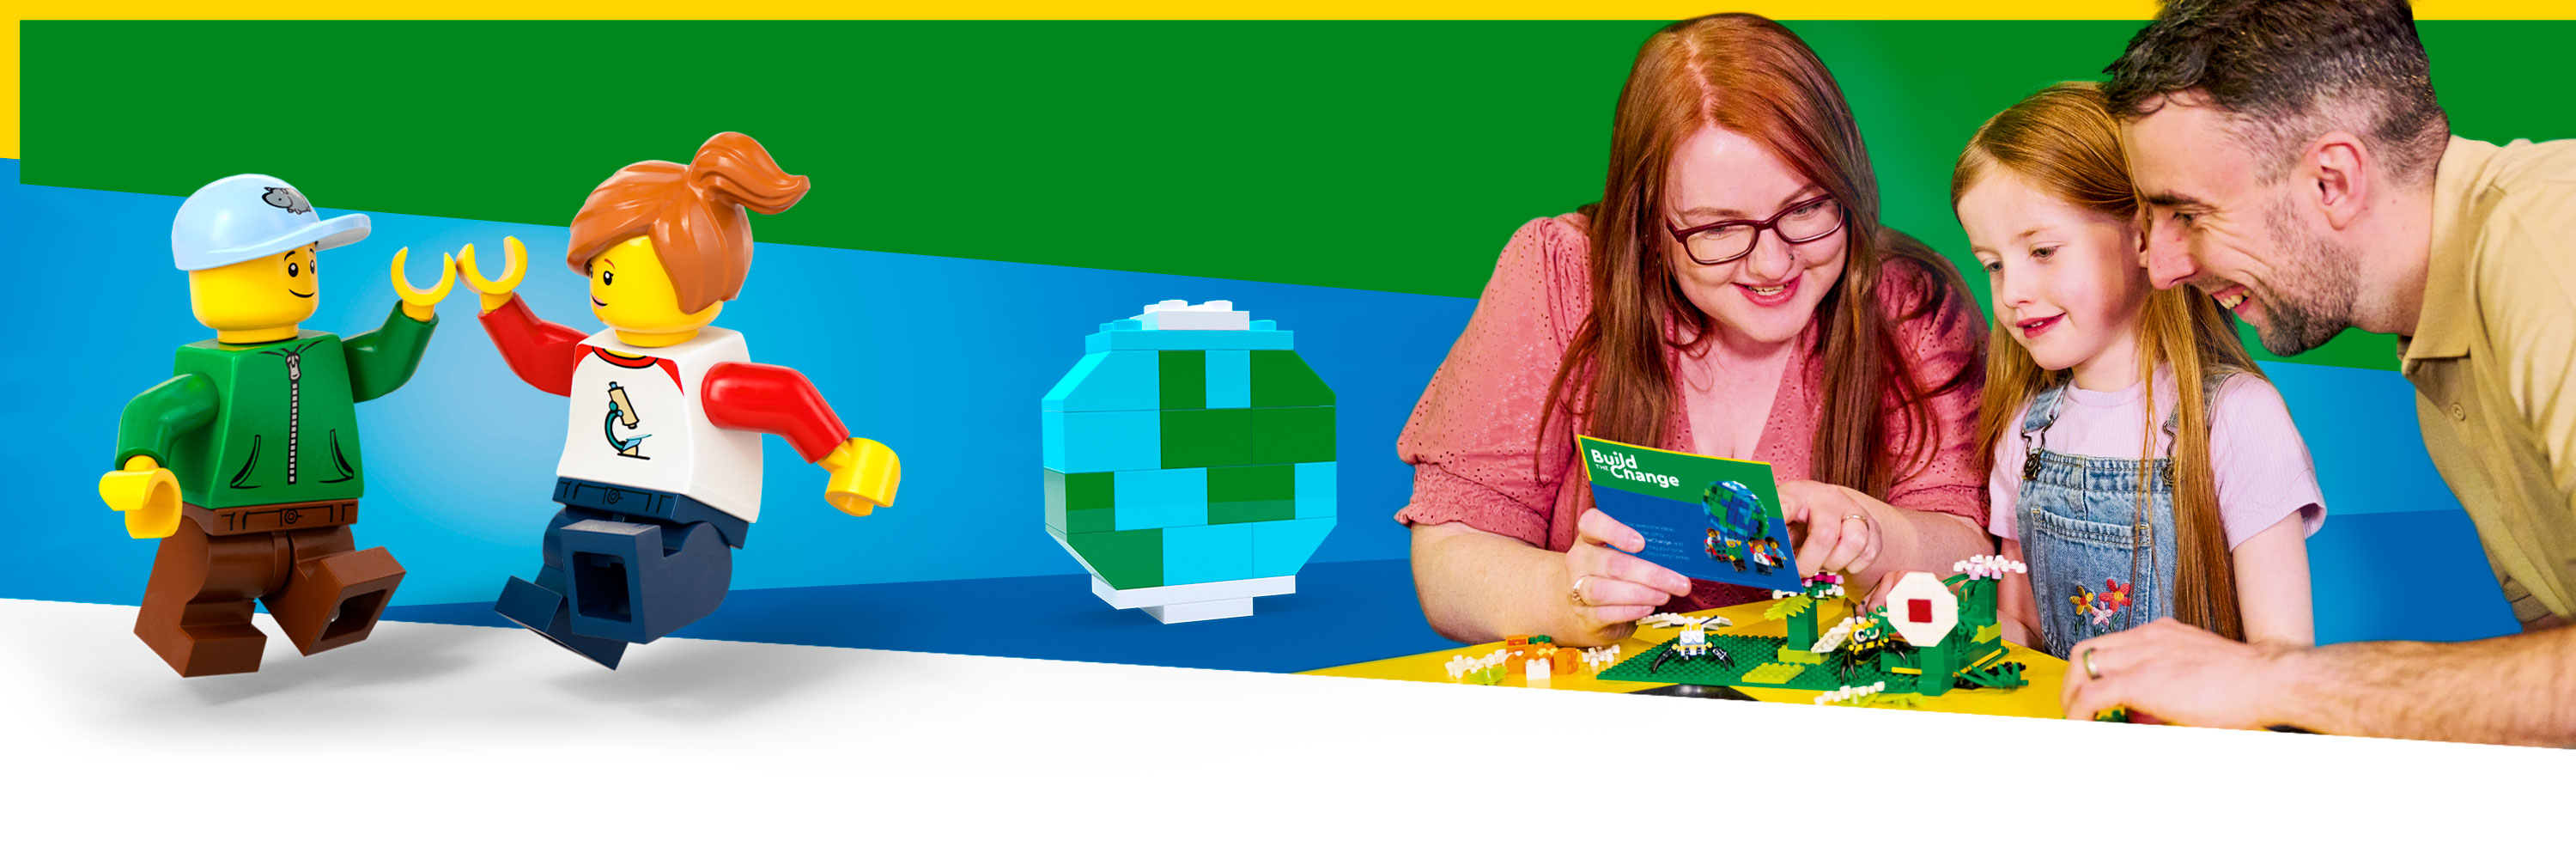 LEGO BTC Event Page Desktop 3000X1000px 01